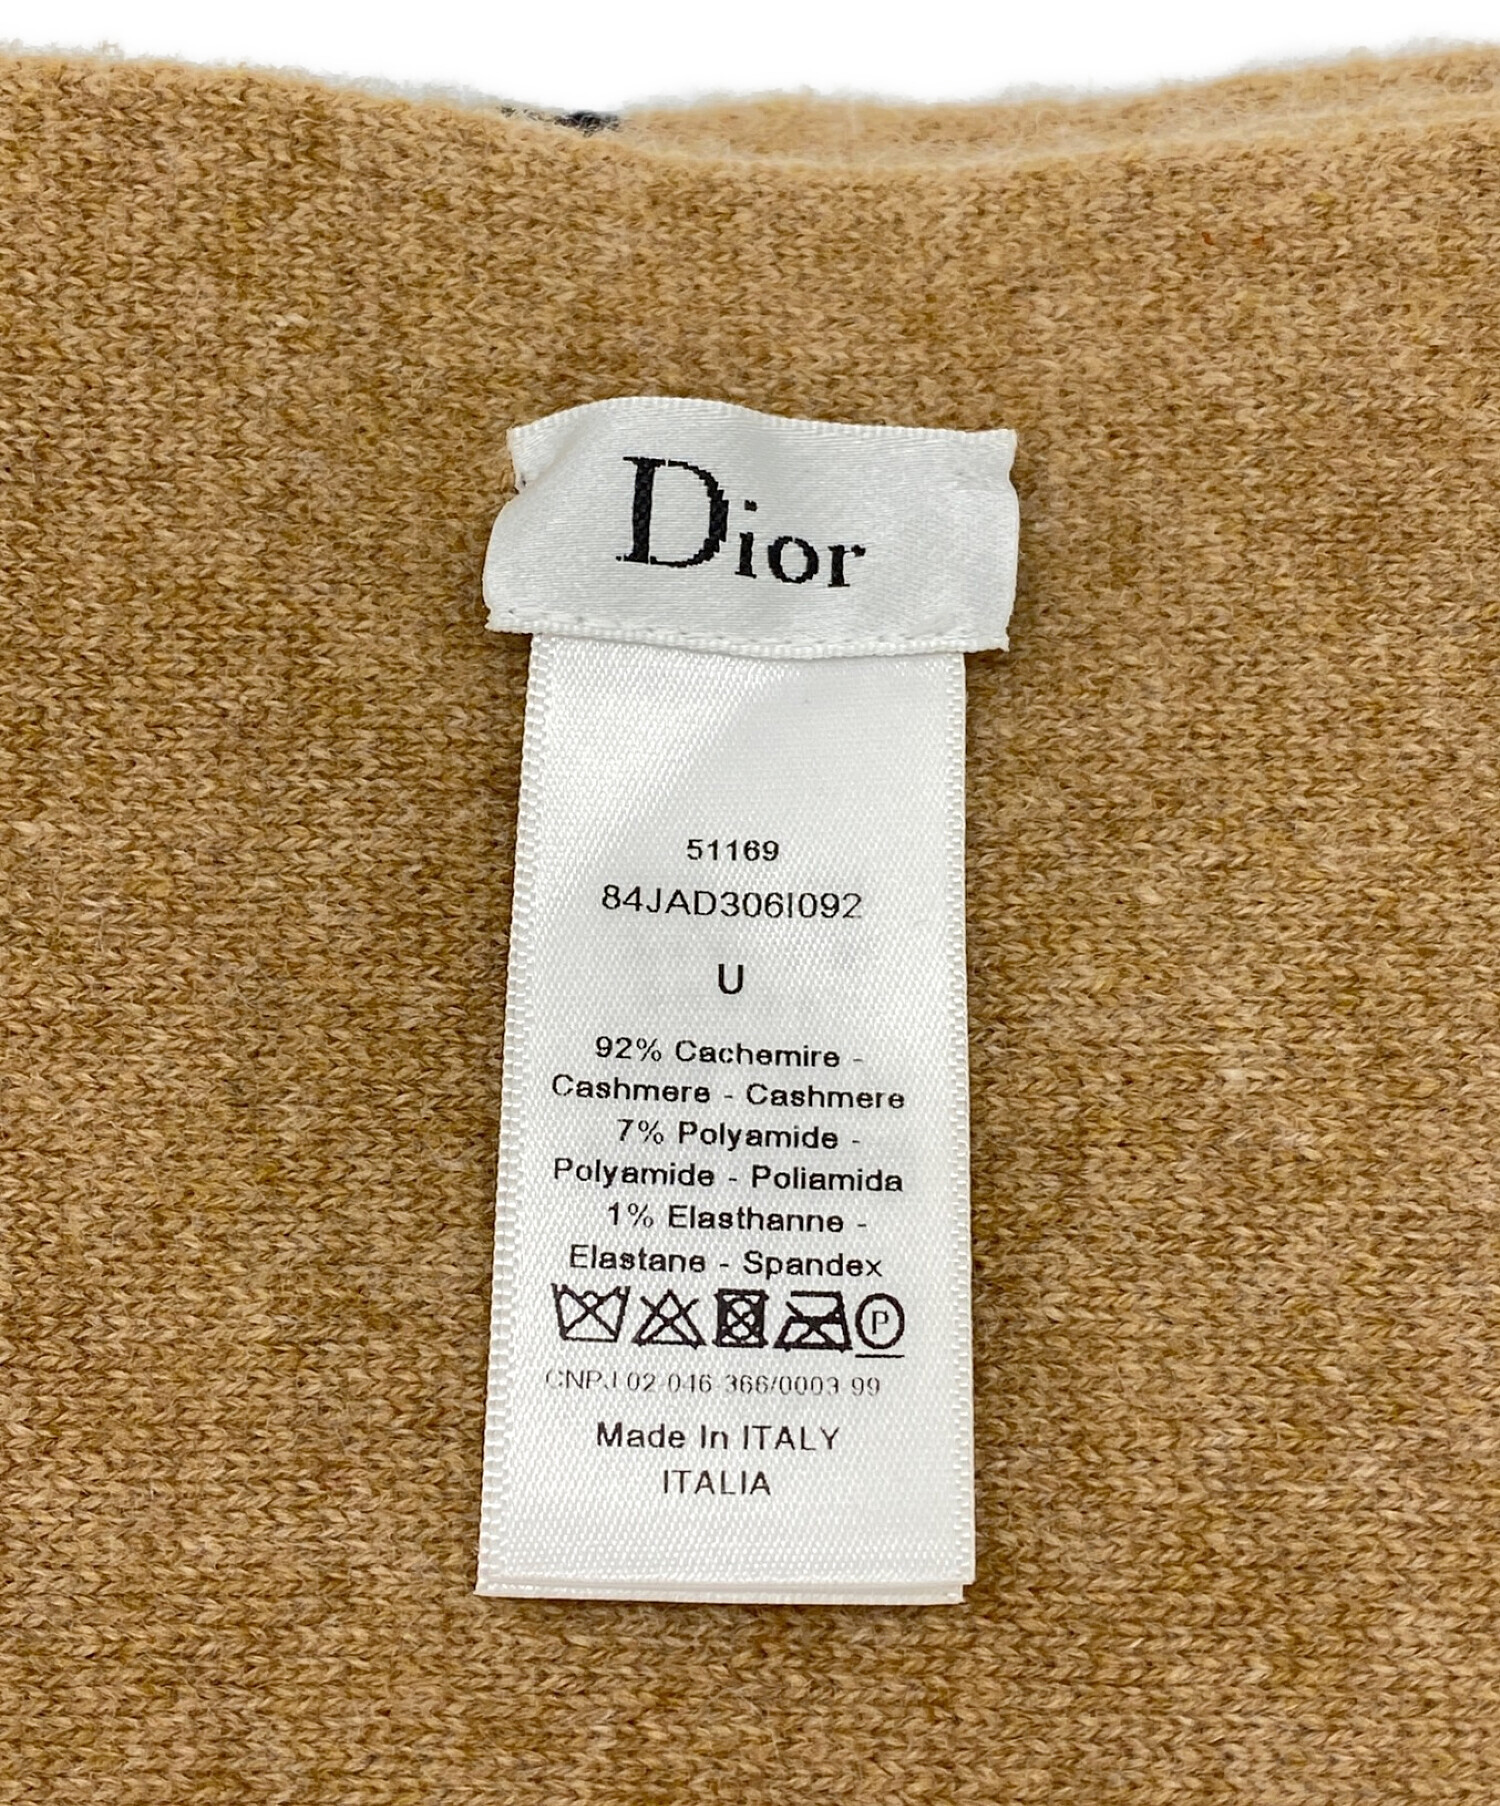 Christian Dior (クリスチャン ディオール) マフラー ベージュ